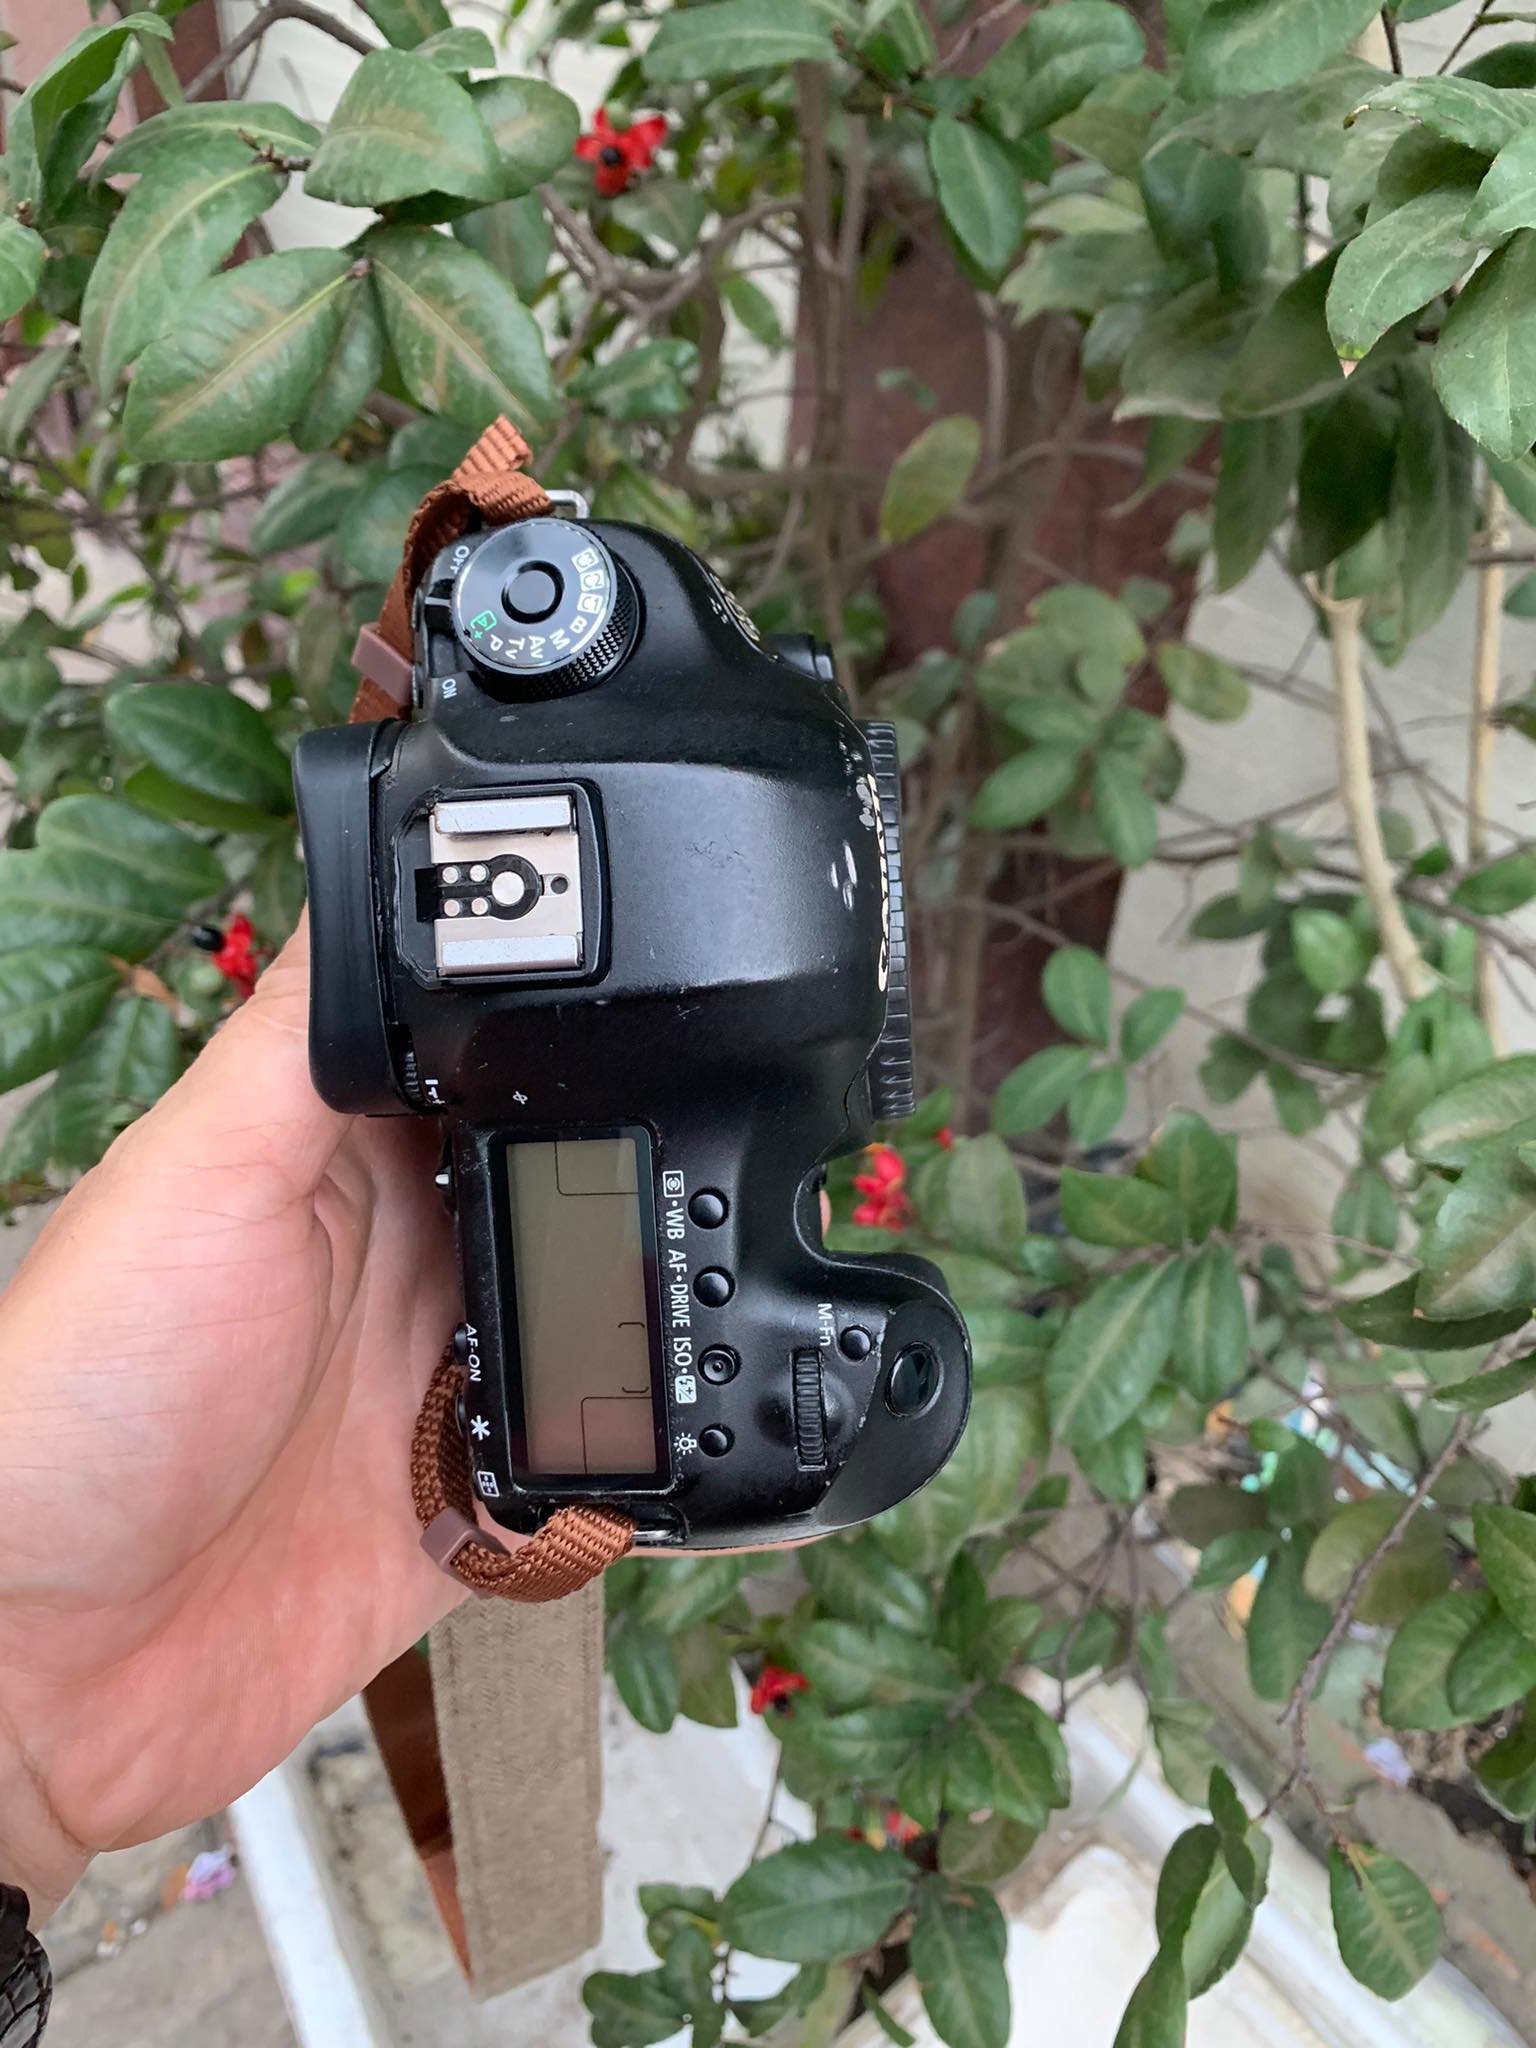 Body Canon EOS 5D mark III cao shot nguyên bản hoạt động hoàn hảo